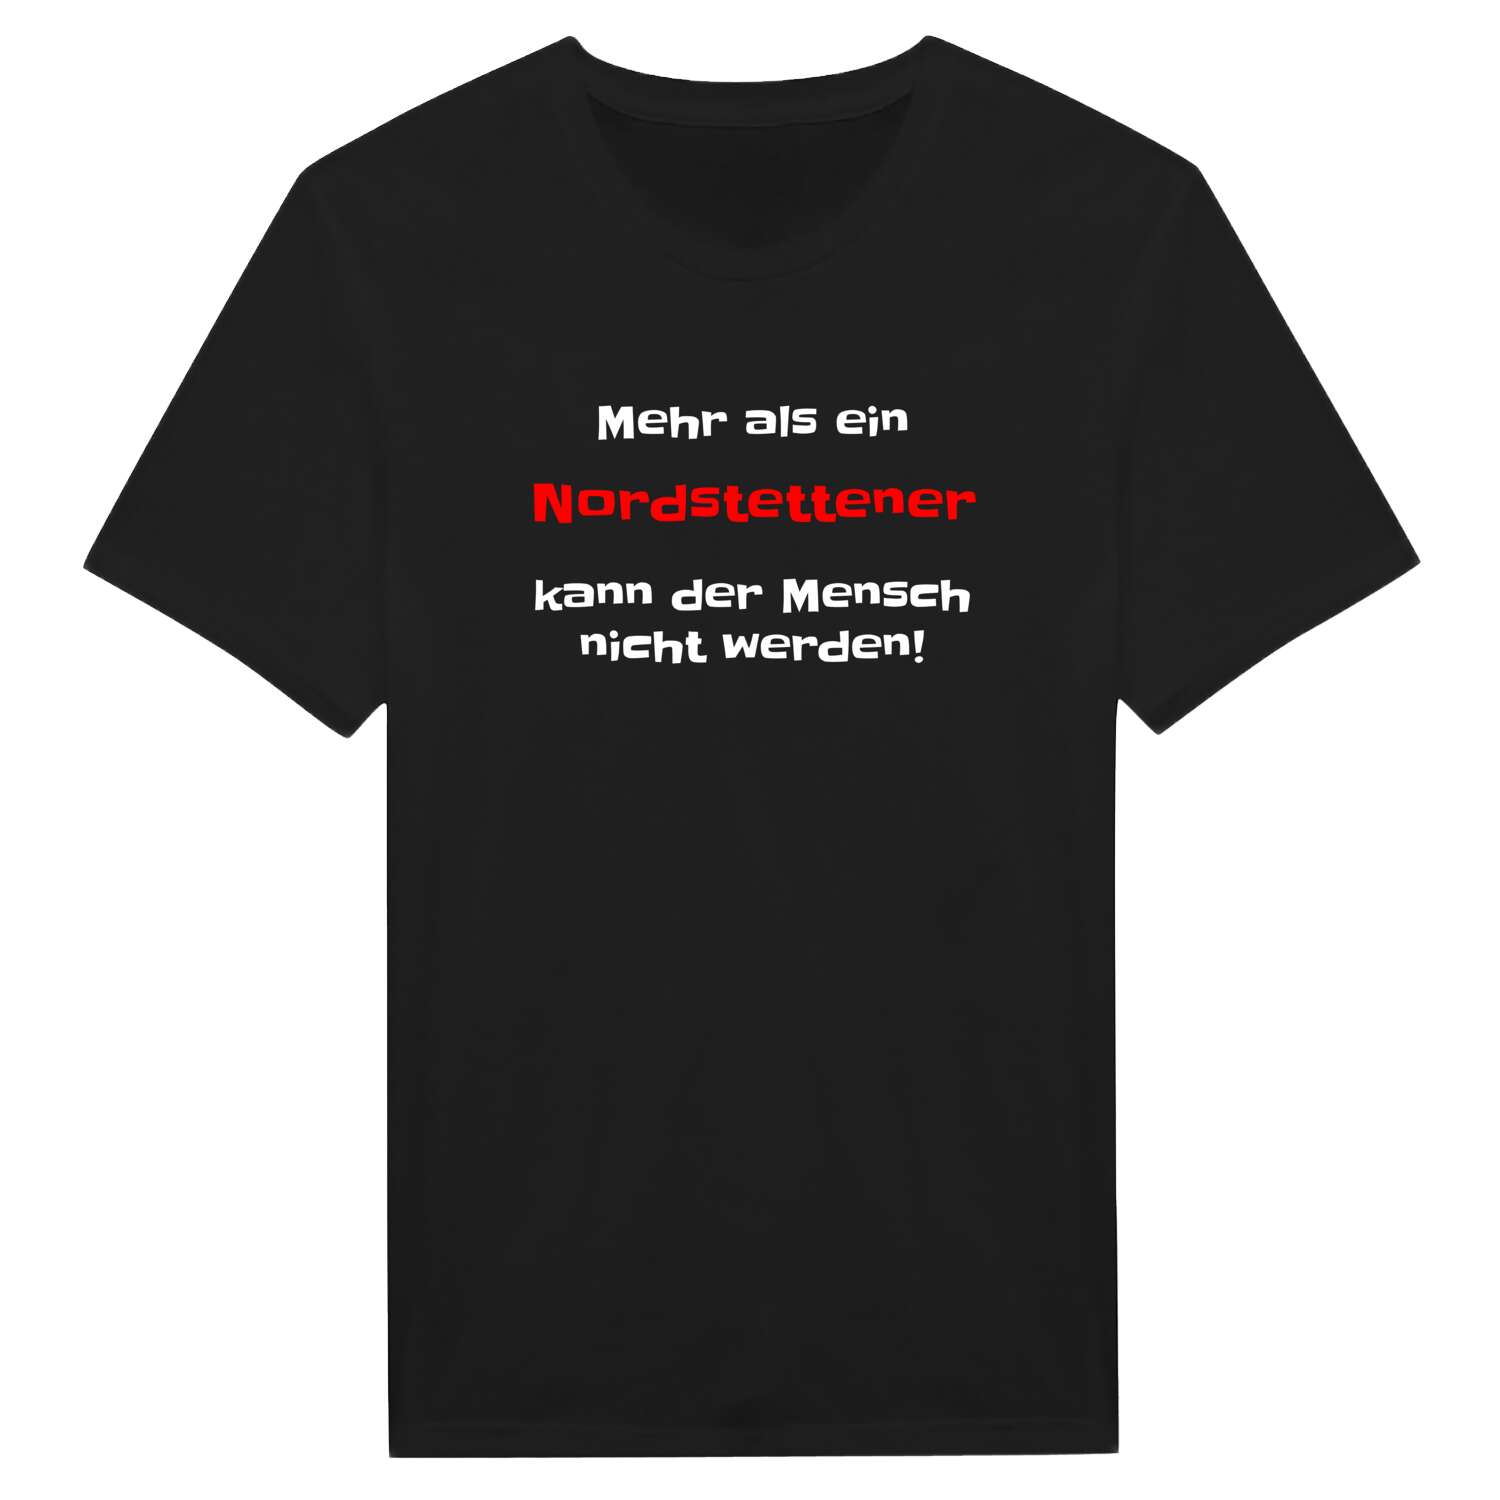 Nordstetten T-Shirt »Mehr als ein«